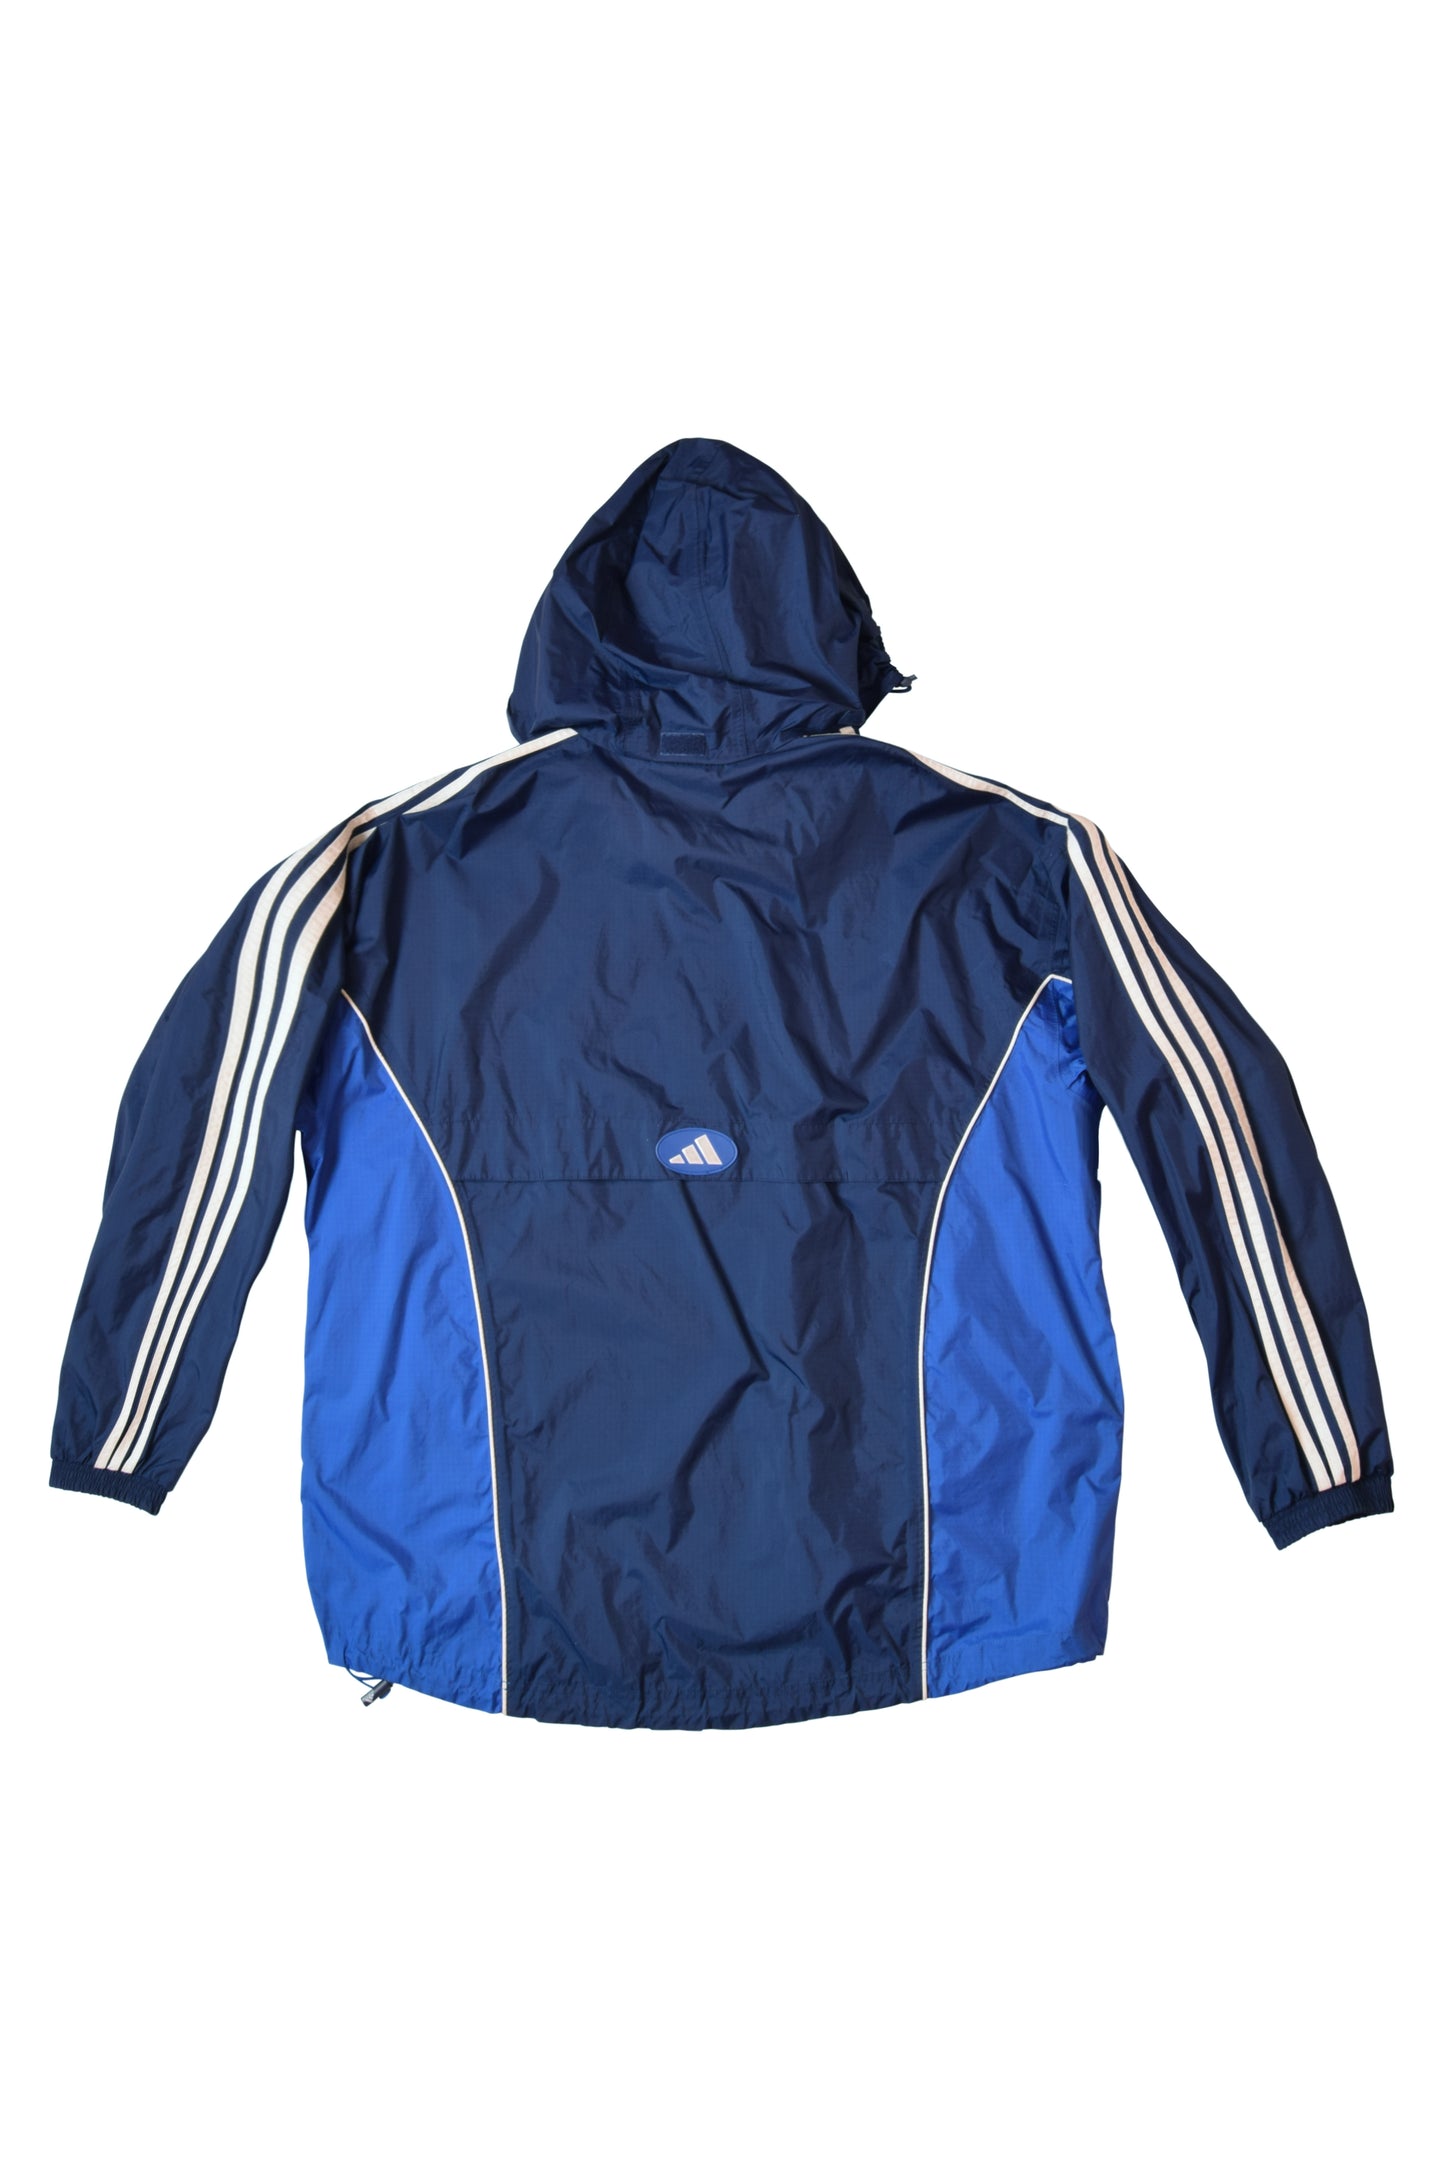 Vintage Adidas Jacket / Festival Windbreaker 90's